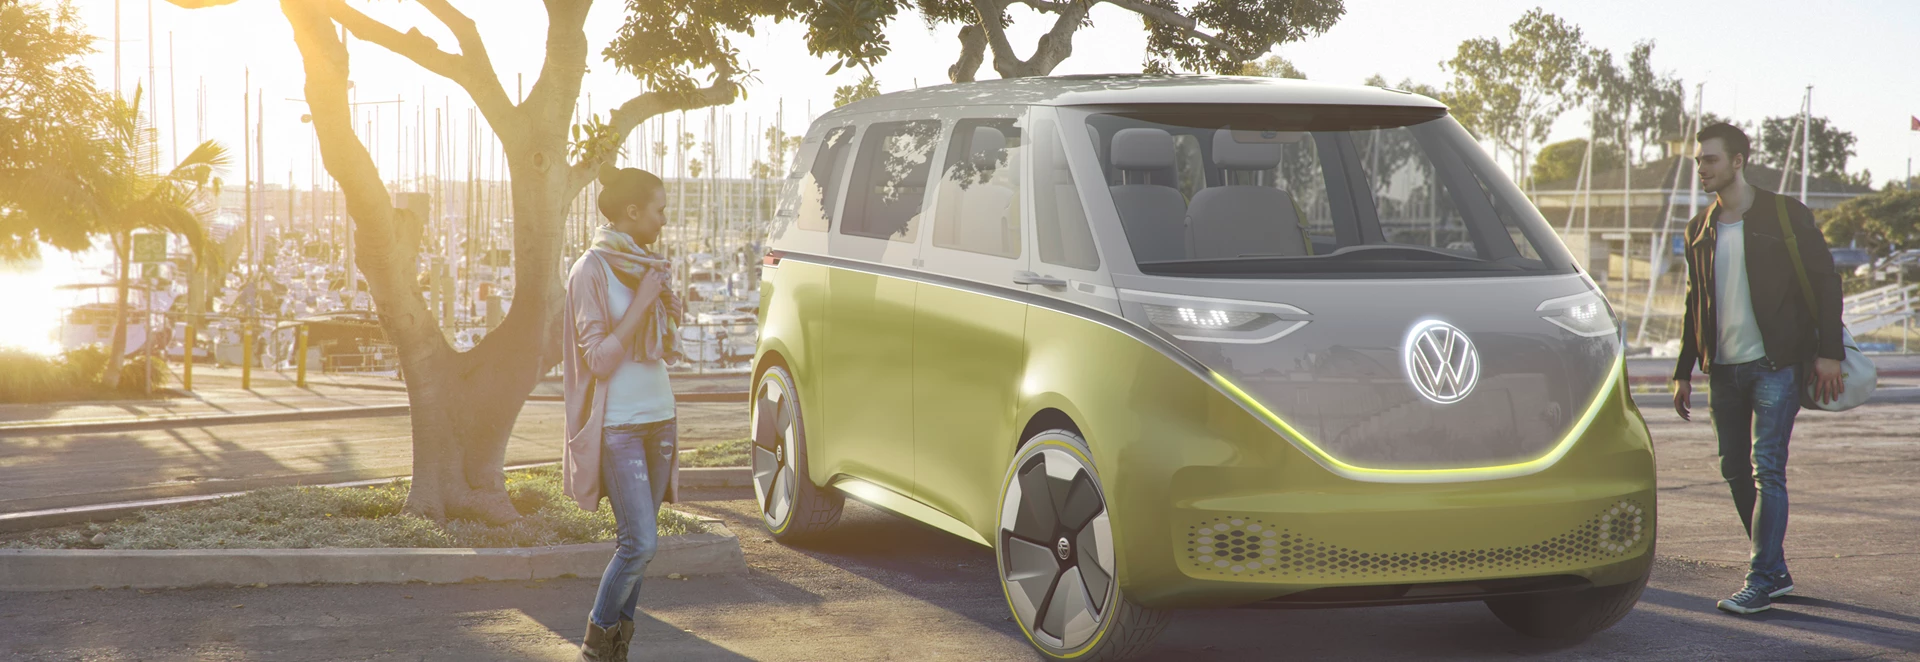 Volkswagen Electric Minivan Will Enter Production 